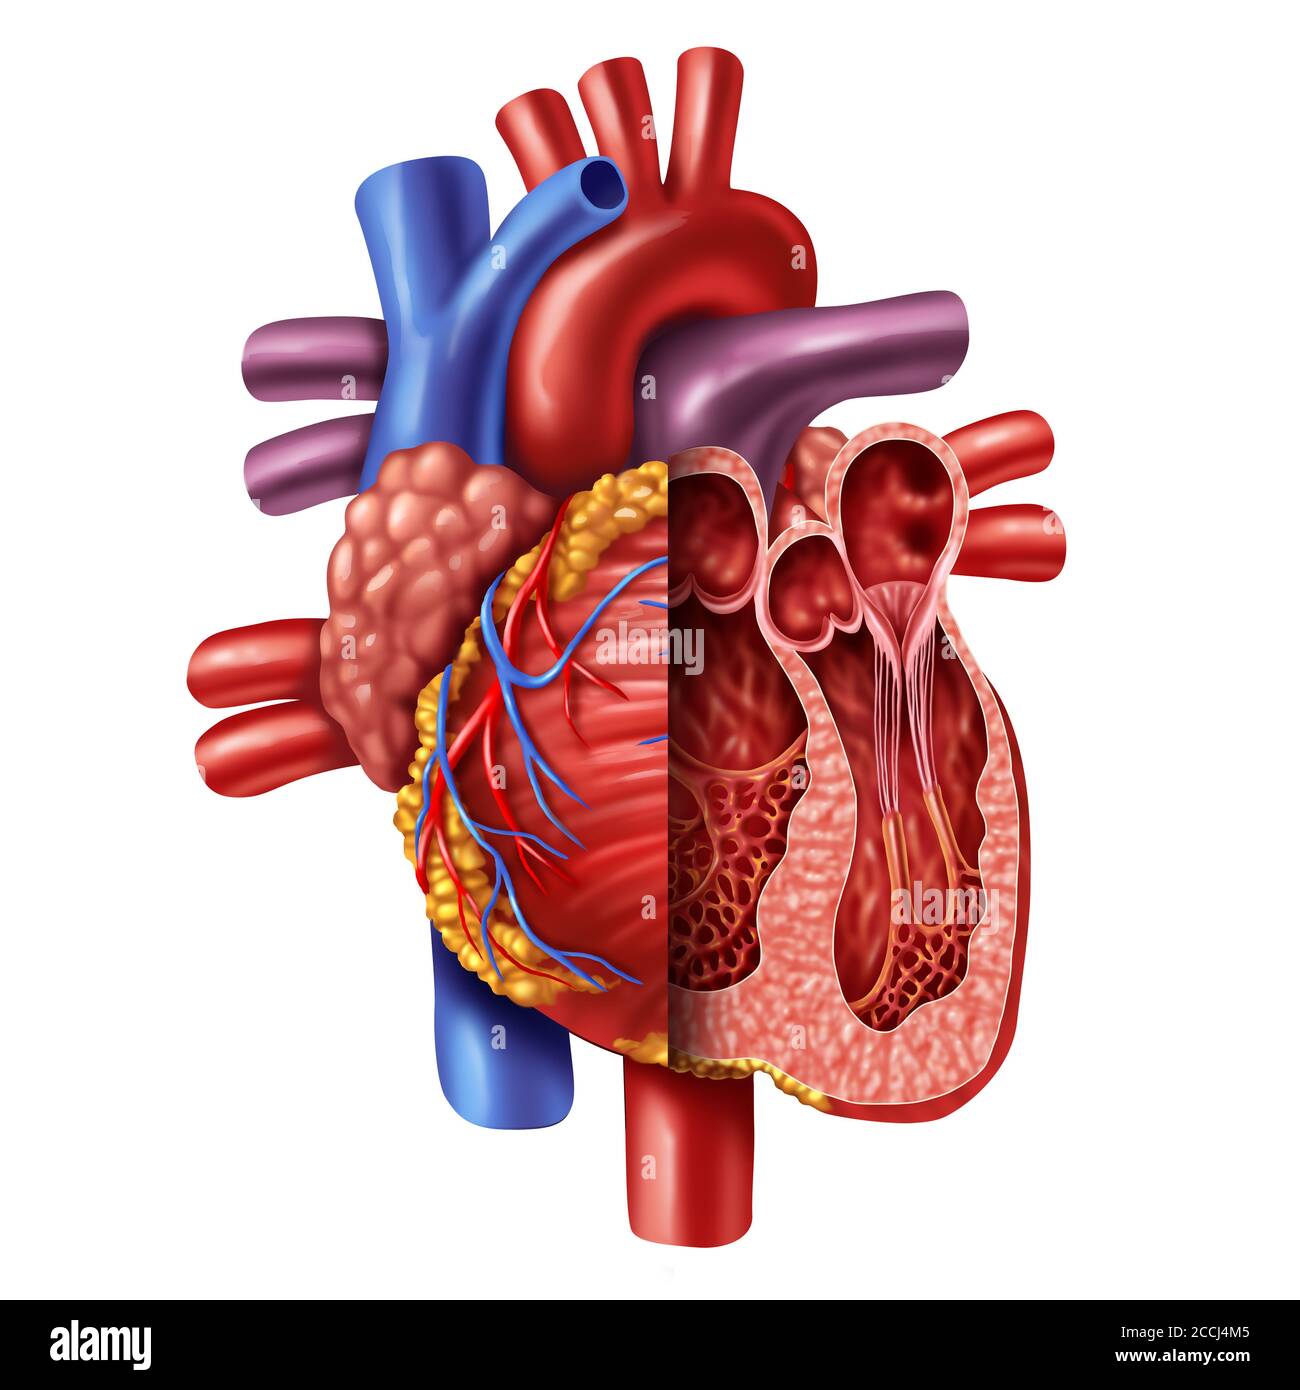 Anatomie eines menschlichen Herzquerschnitts aus einem gesunden Körper isoliert auf weißem Hintergrund als medizinisches Gesundheitssymbol eines inneren Herz-Kreislauf-Systems. Stockfoto